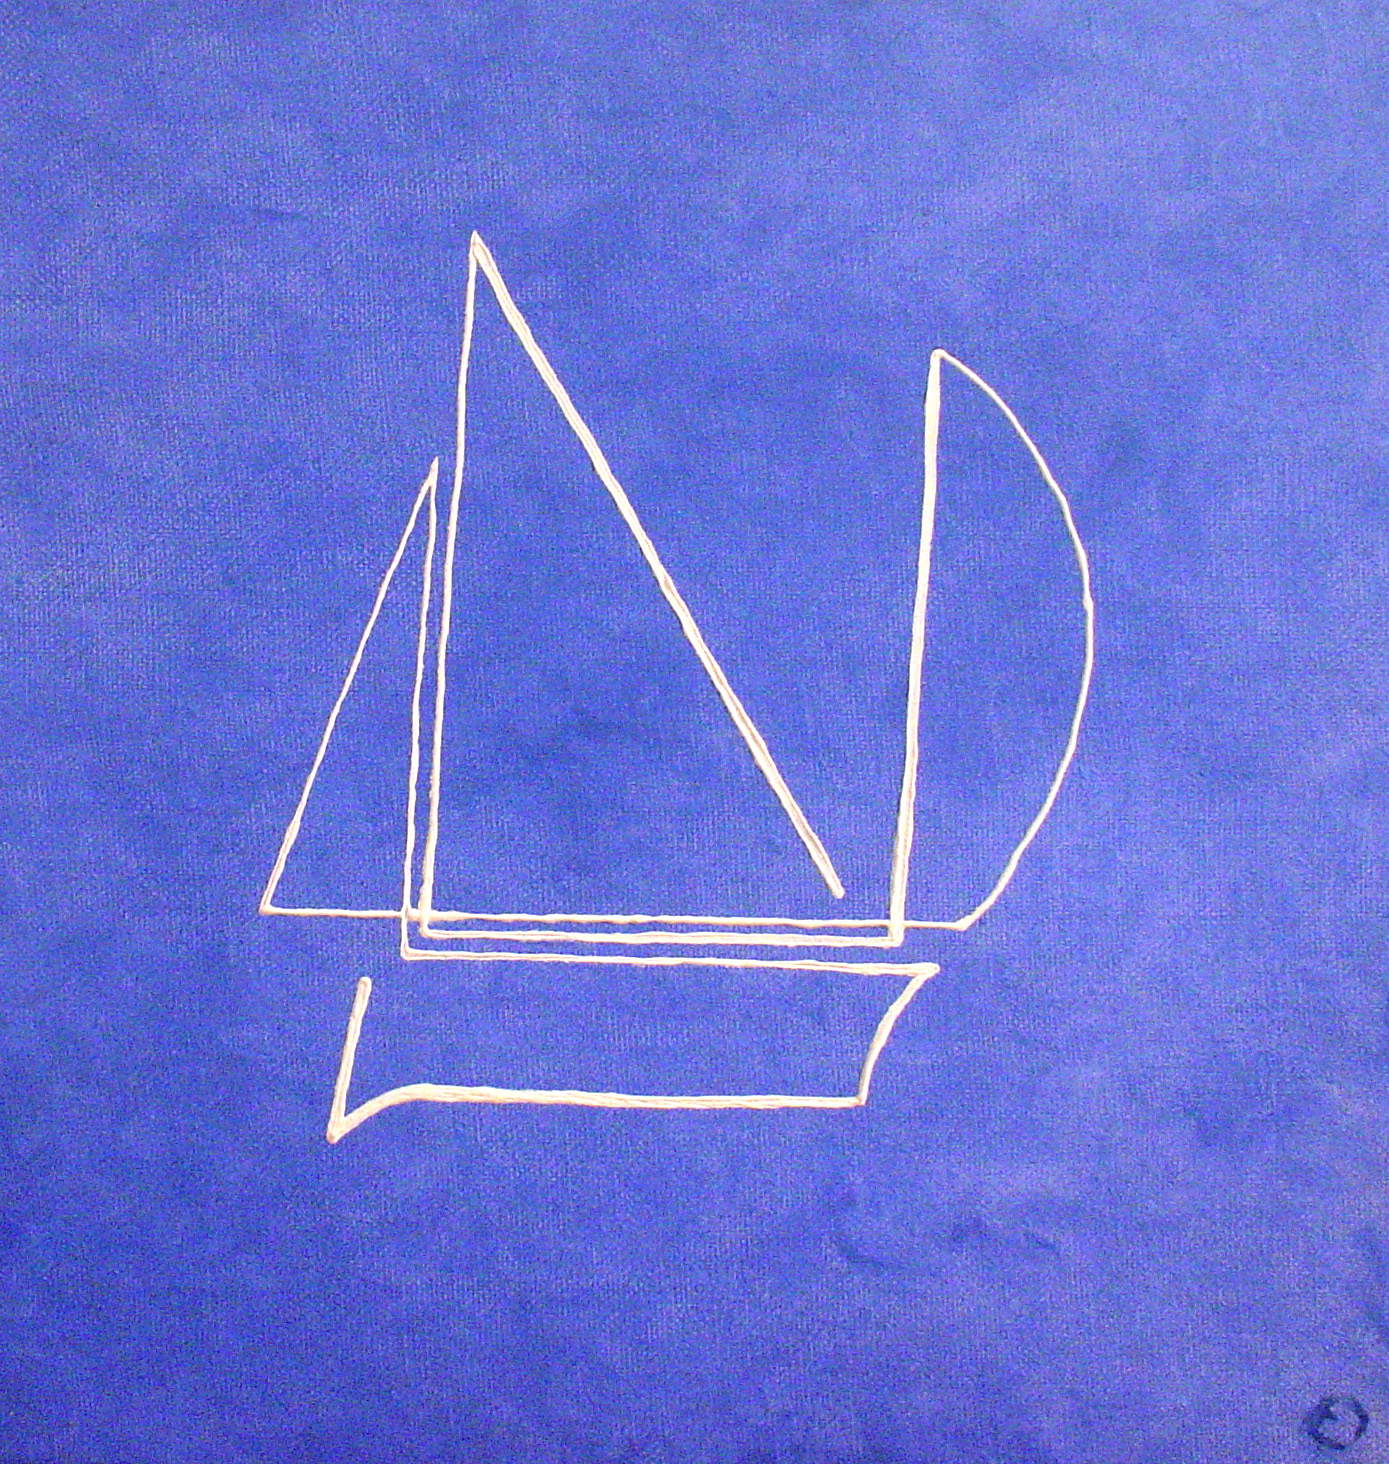 bateau blau JB G GARCIN painting